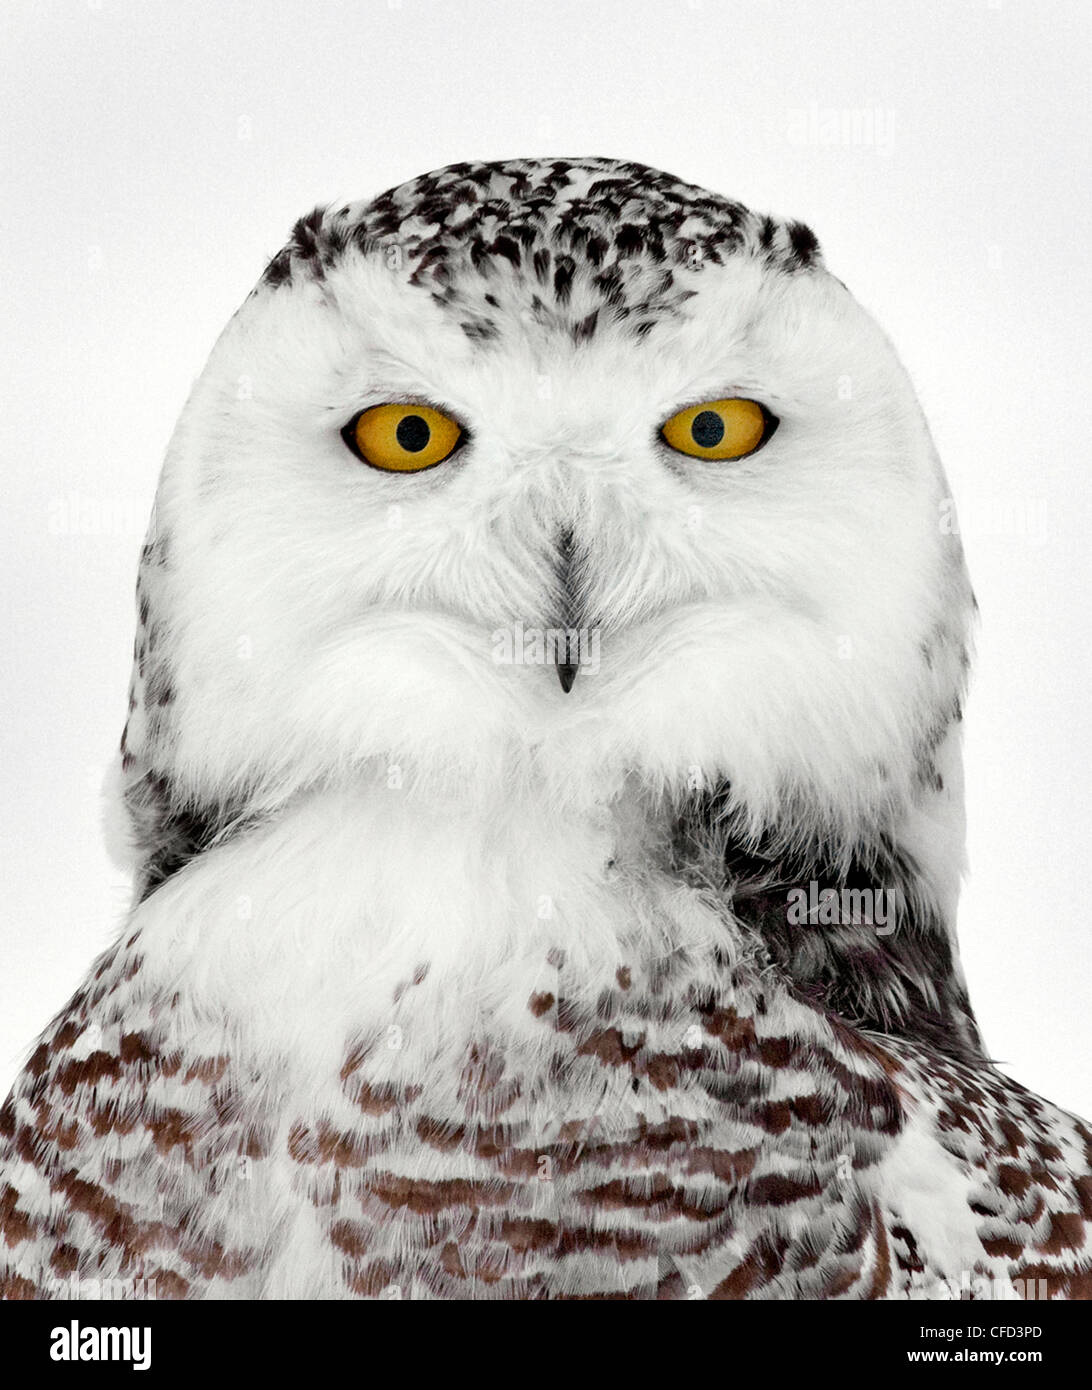 Snowy Owl portrait, Ottawa, Canada Stock Photo